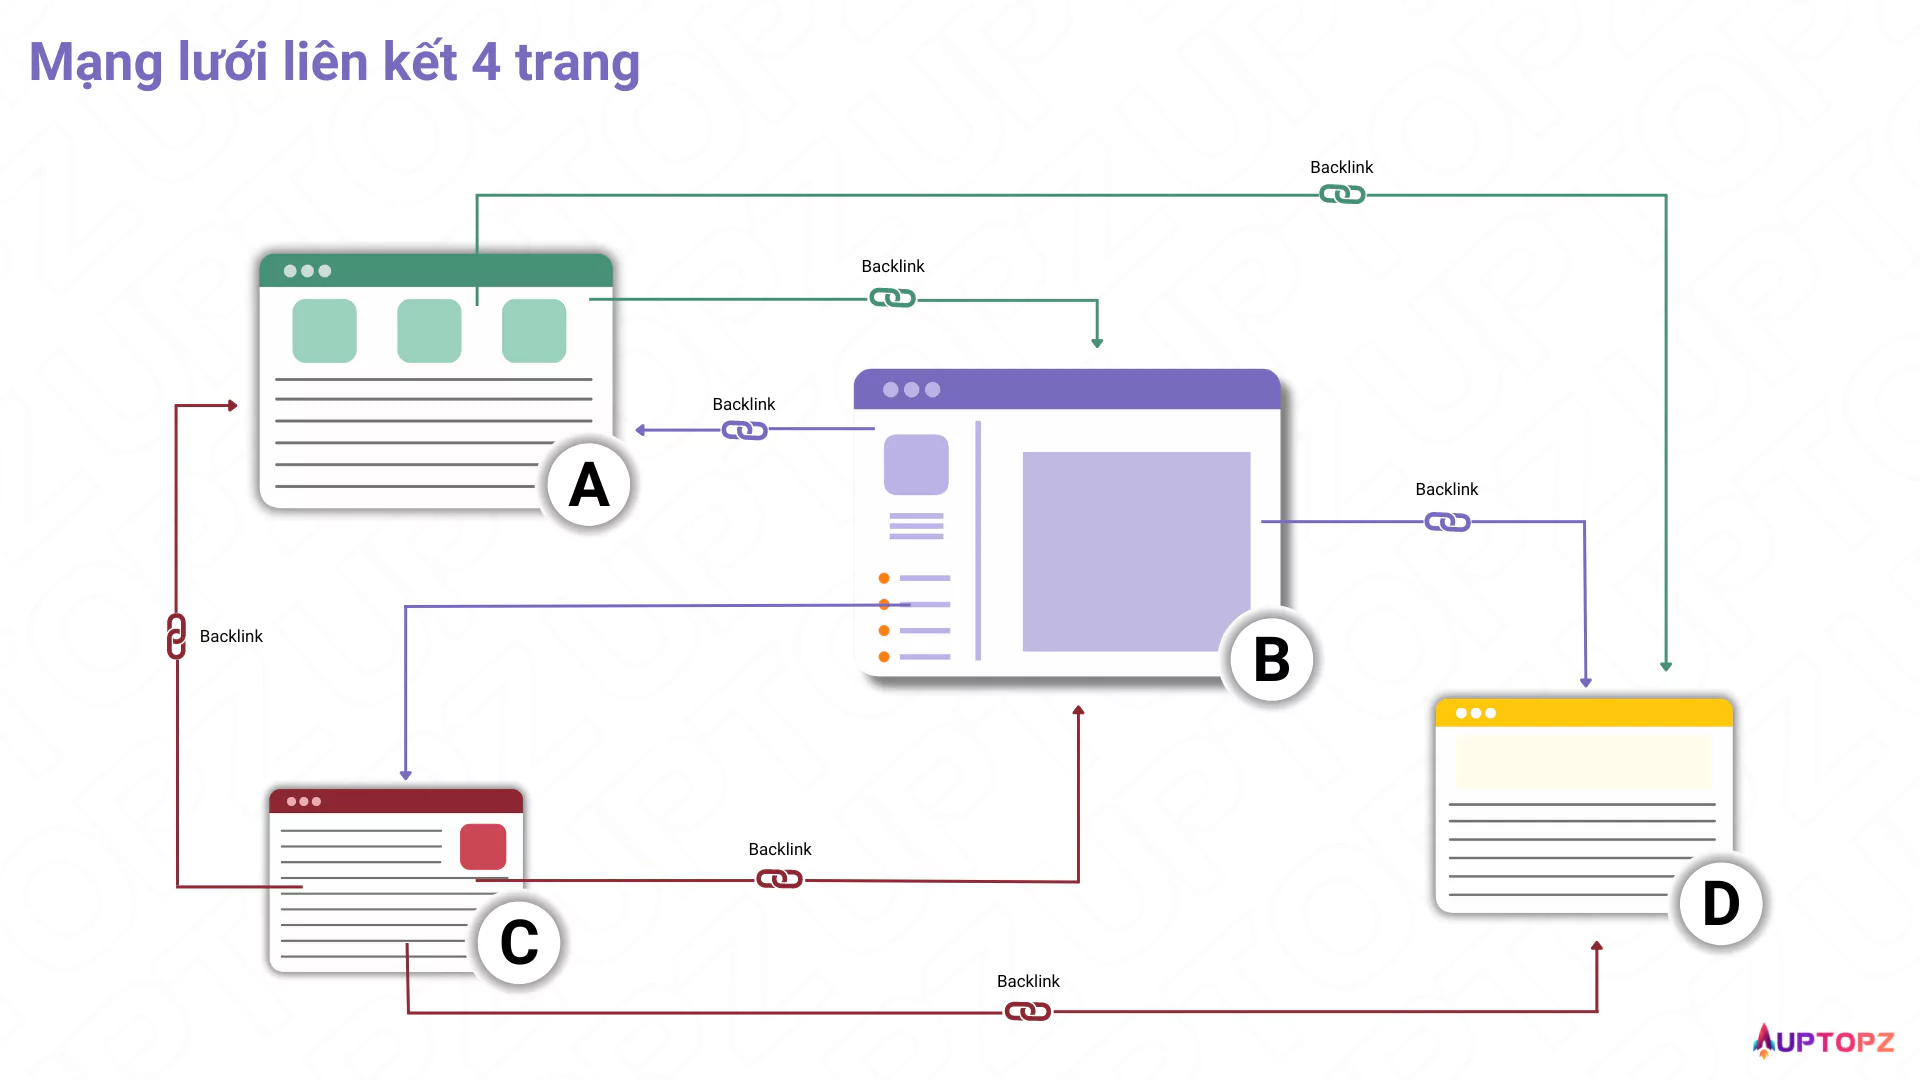 Minh họa mạng lưới liên kết đơn giản với bốn trang web A, B, C, D